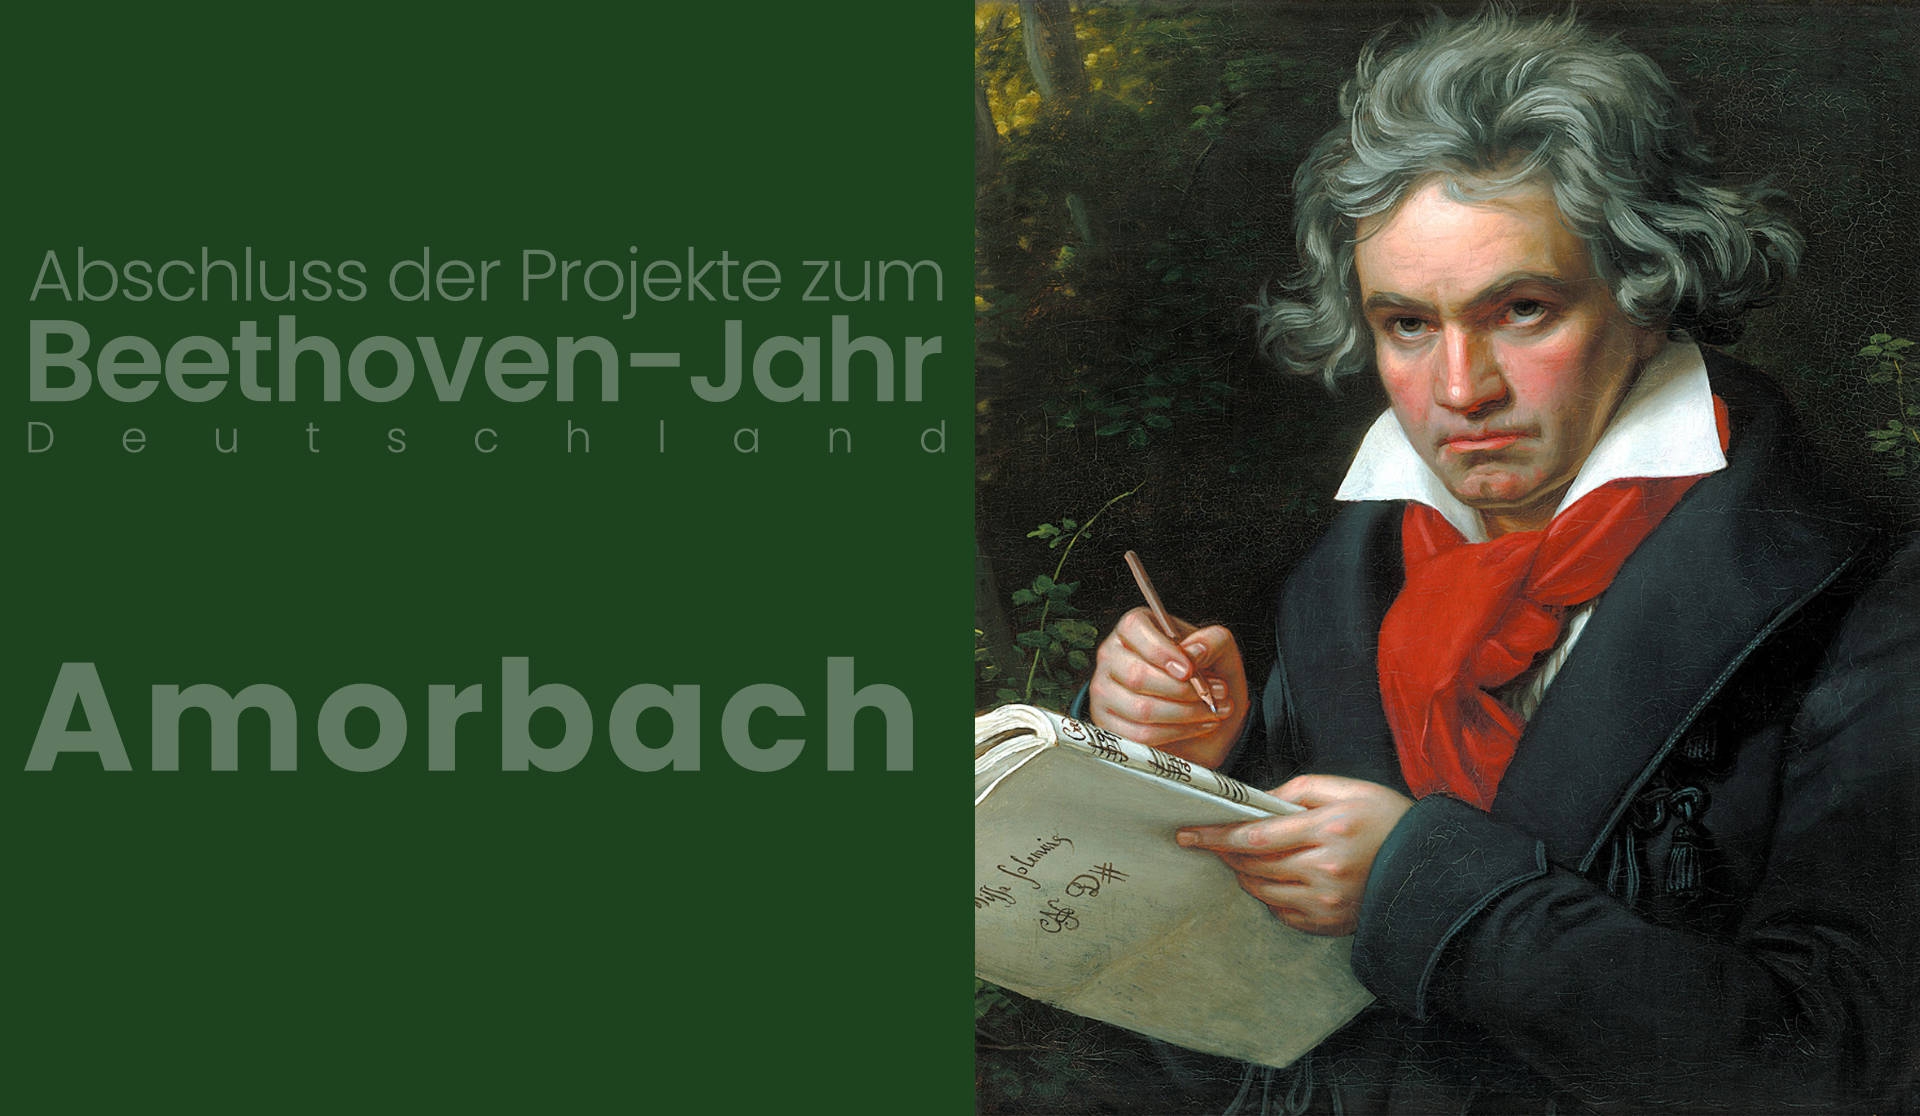 19.12.2021 – Zakończenie Roku Beethovena, Amorbach, Niemcy